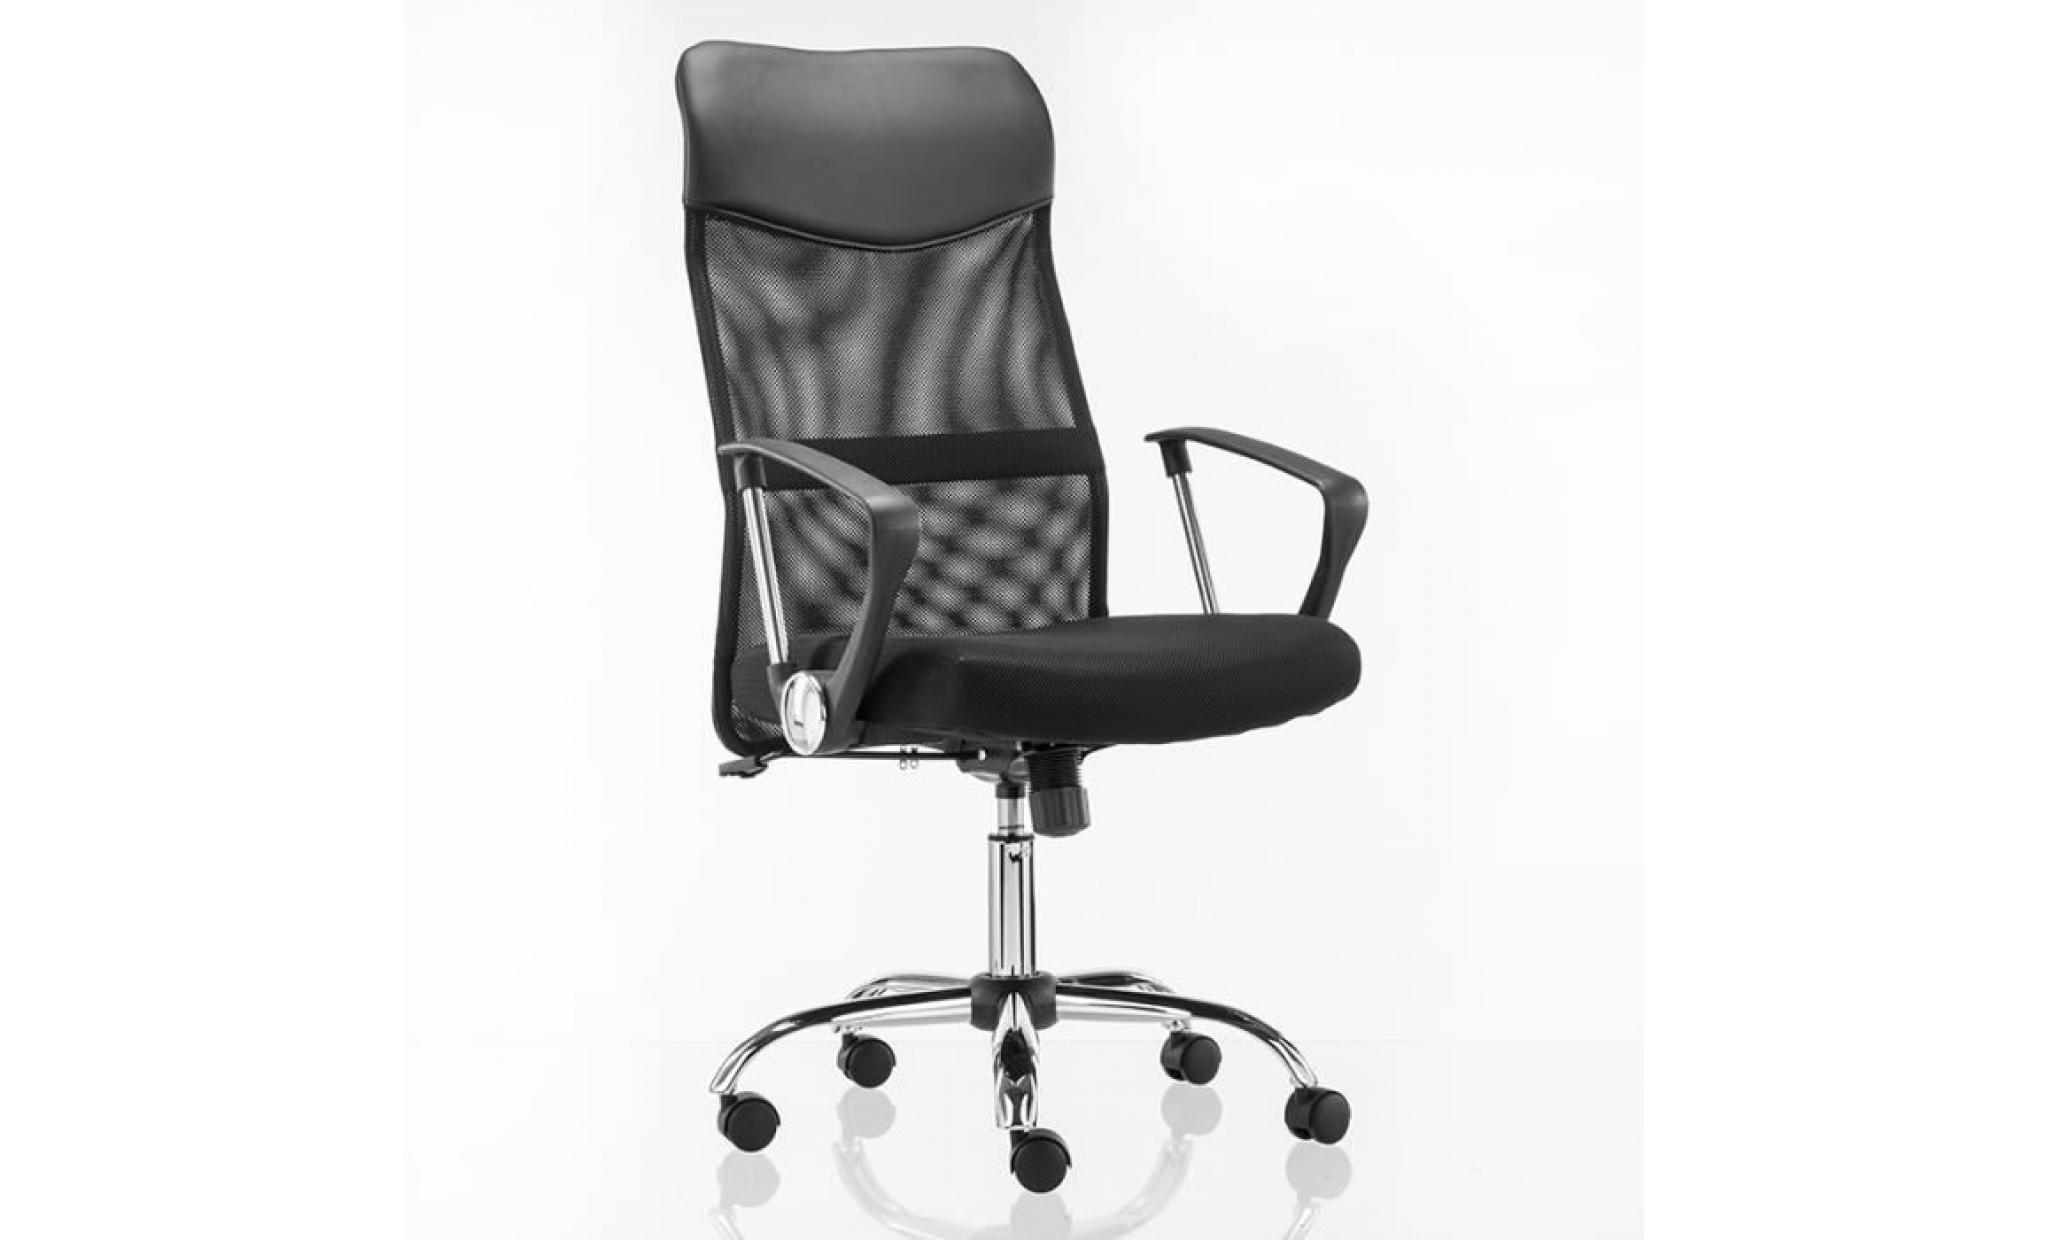 mctech chaise de bureau sur roulettes , fauteuil de bureau , fauteuil pivotant   tissu maille   hauteur réglable   noir